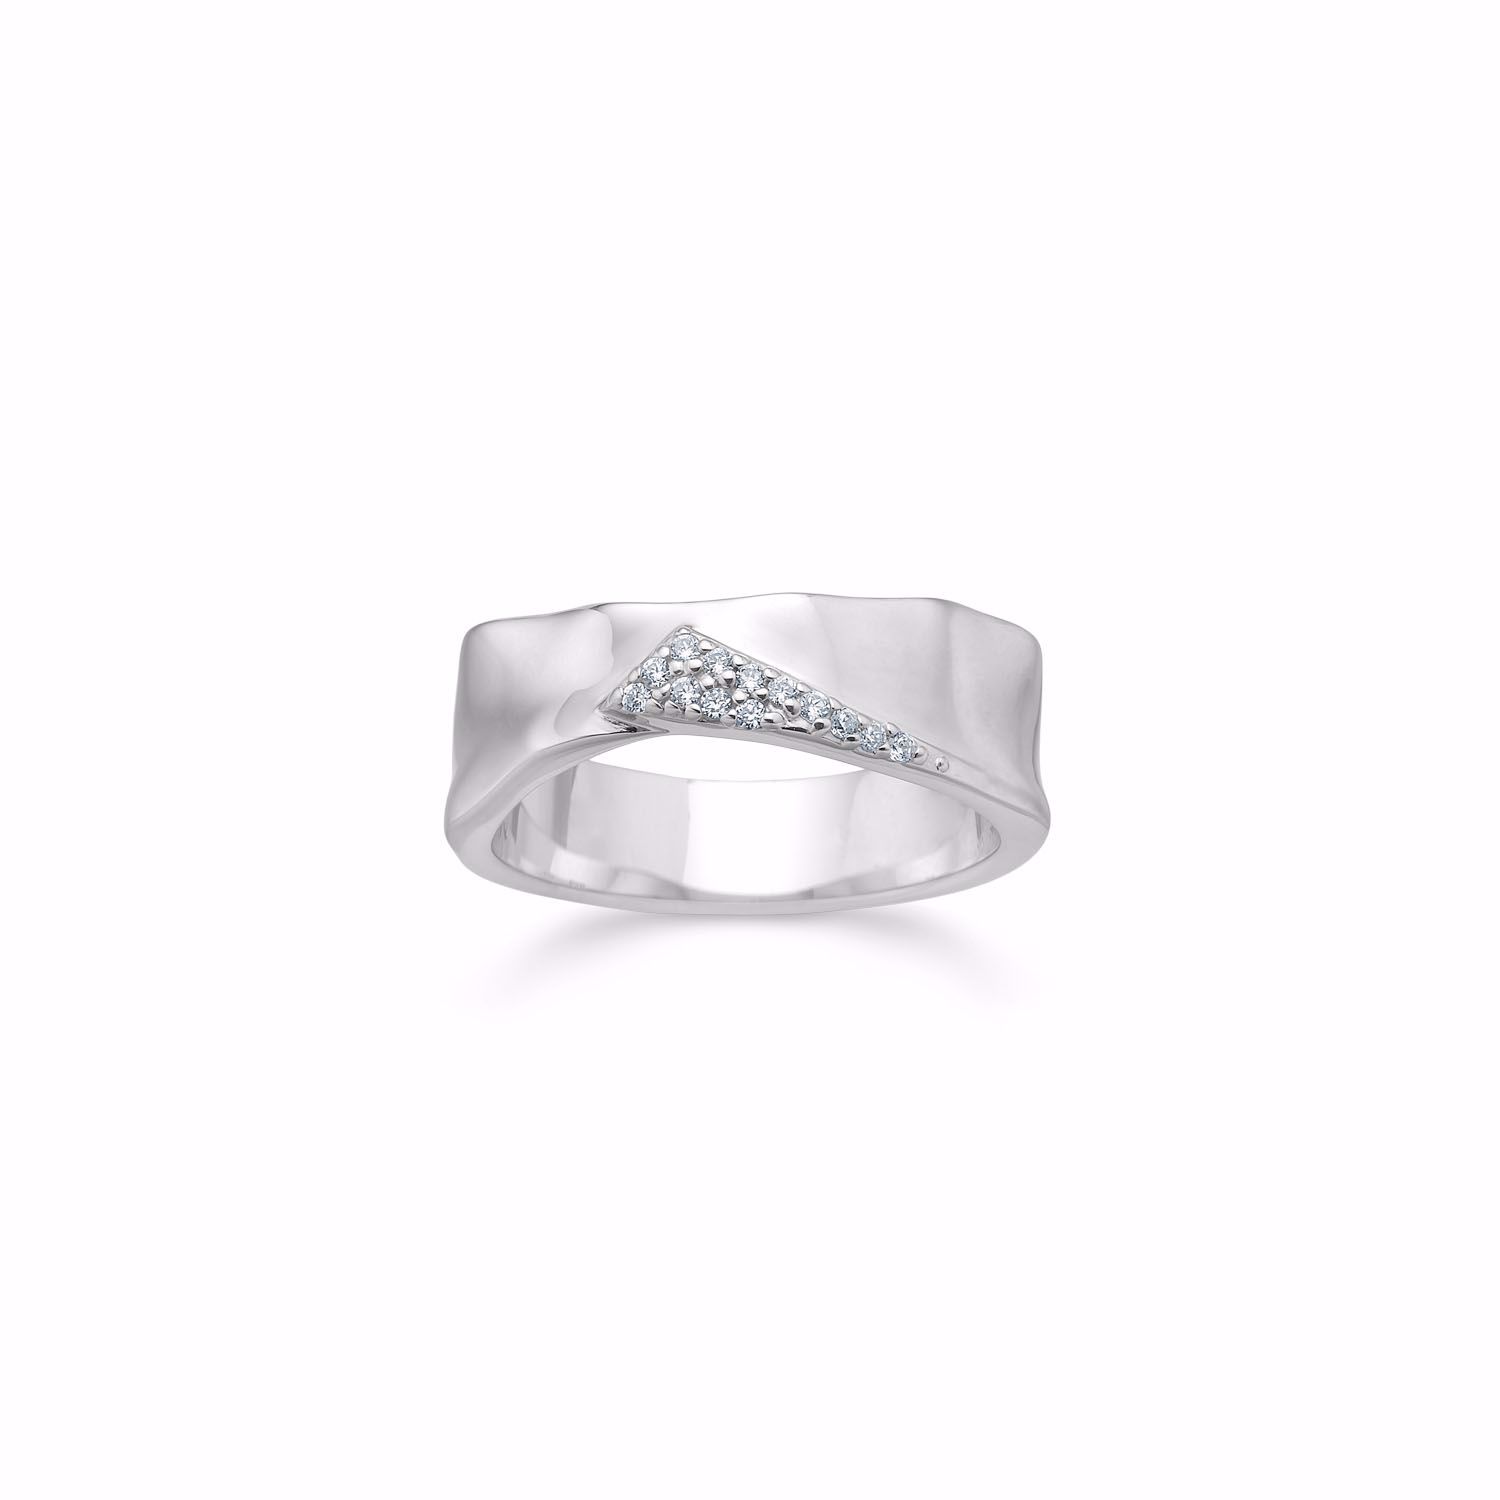 Bred sølv ring med zirkonia sten - Guld & Sølv Design 2026/2